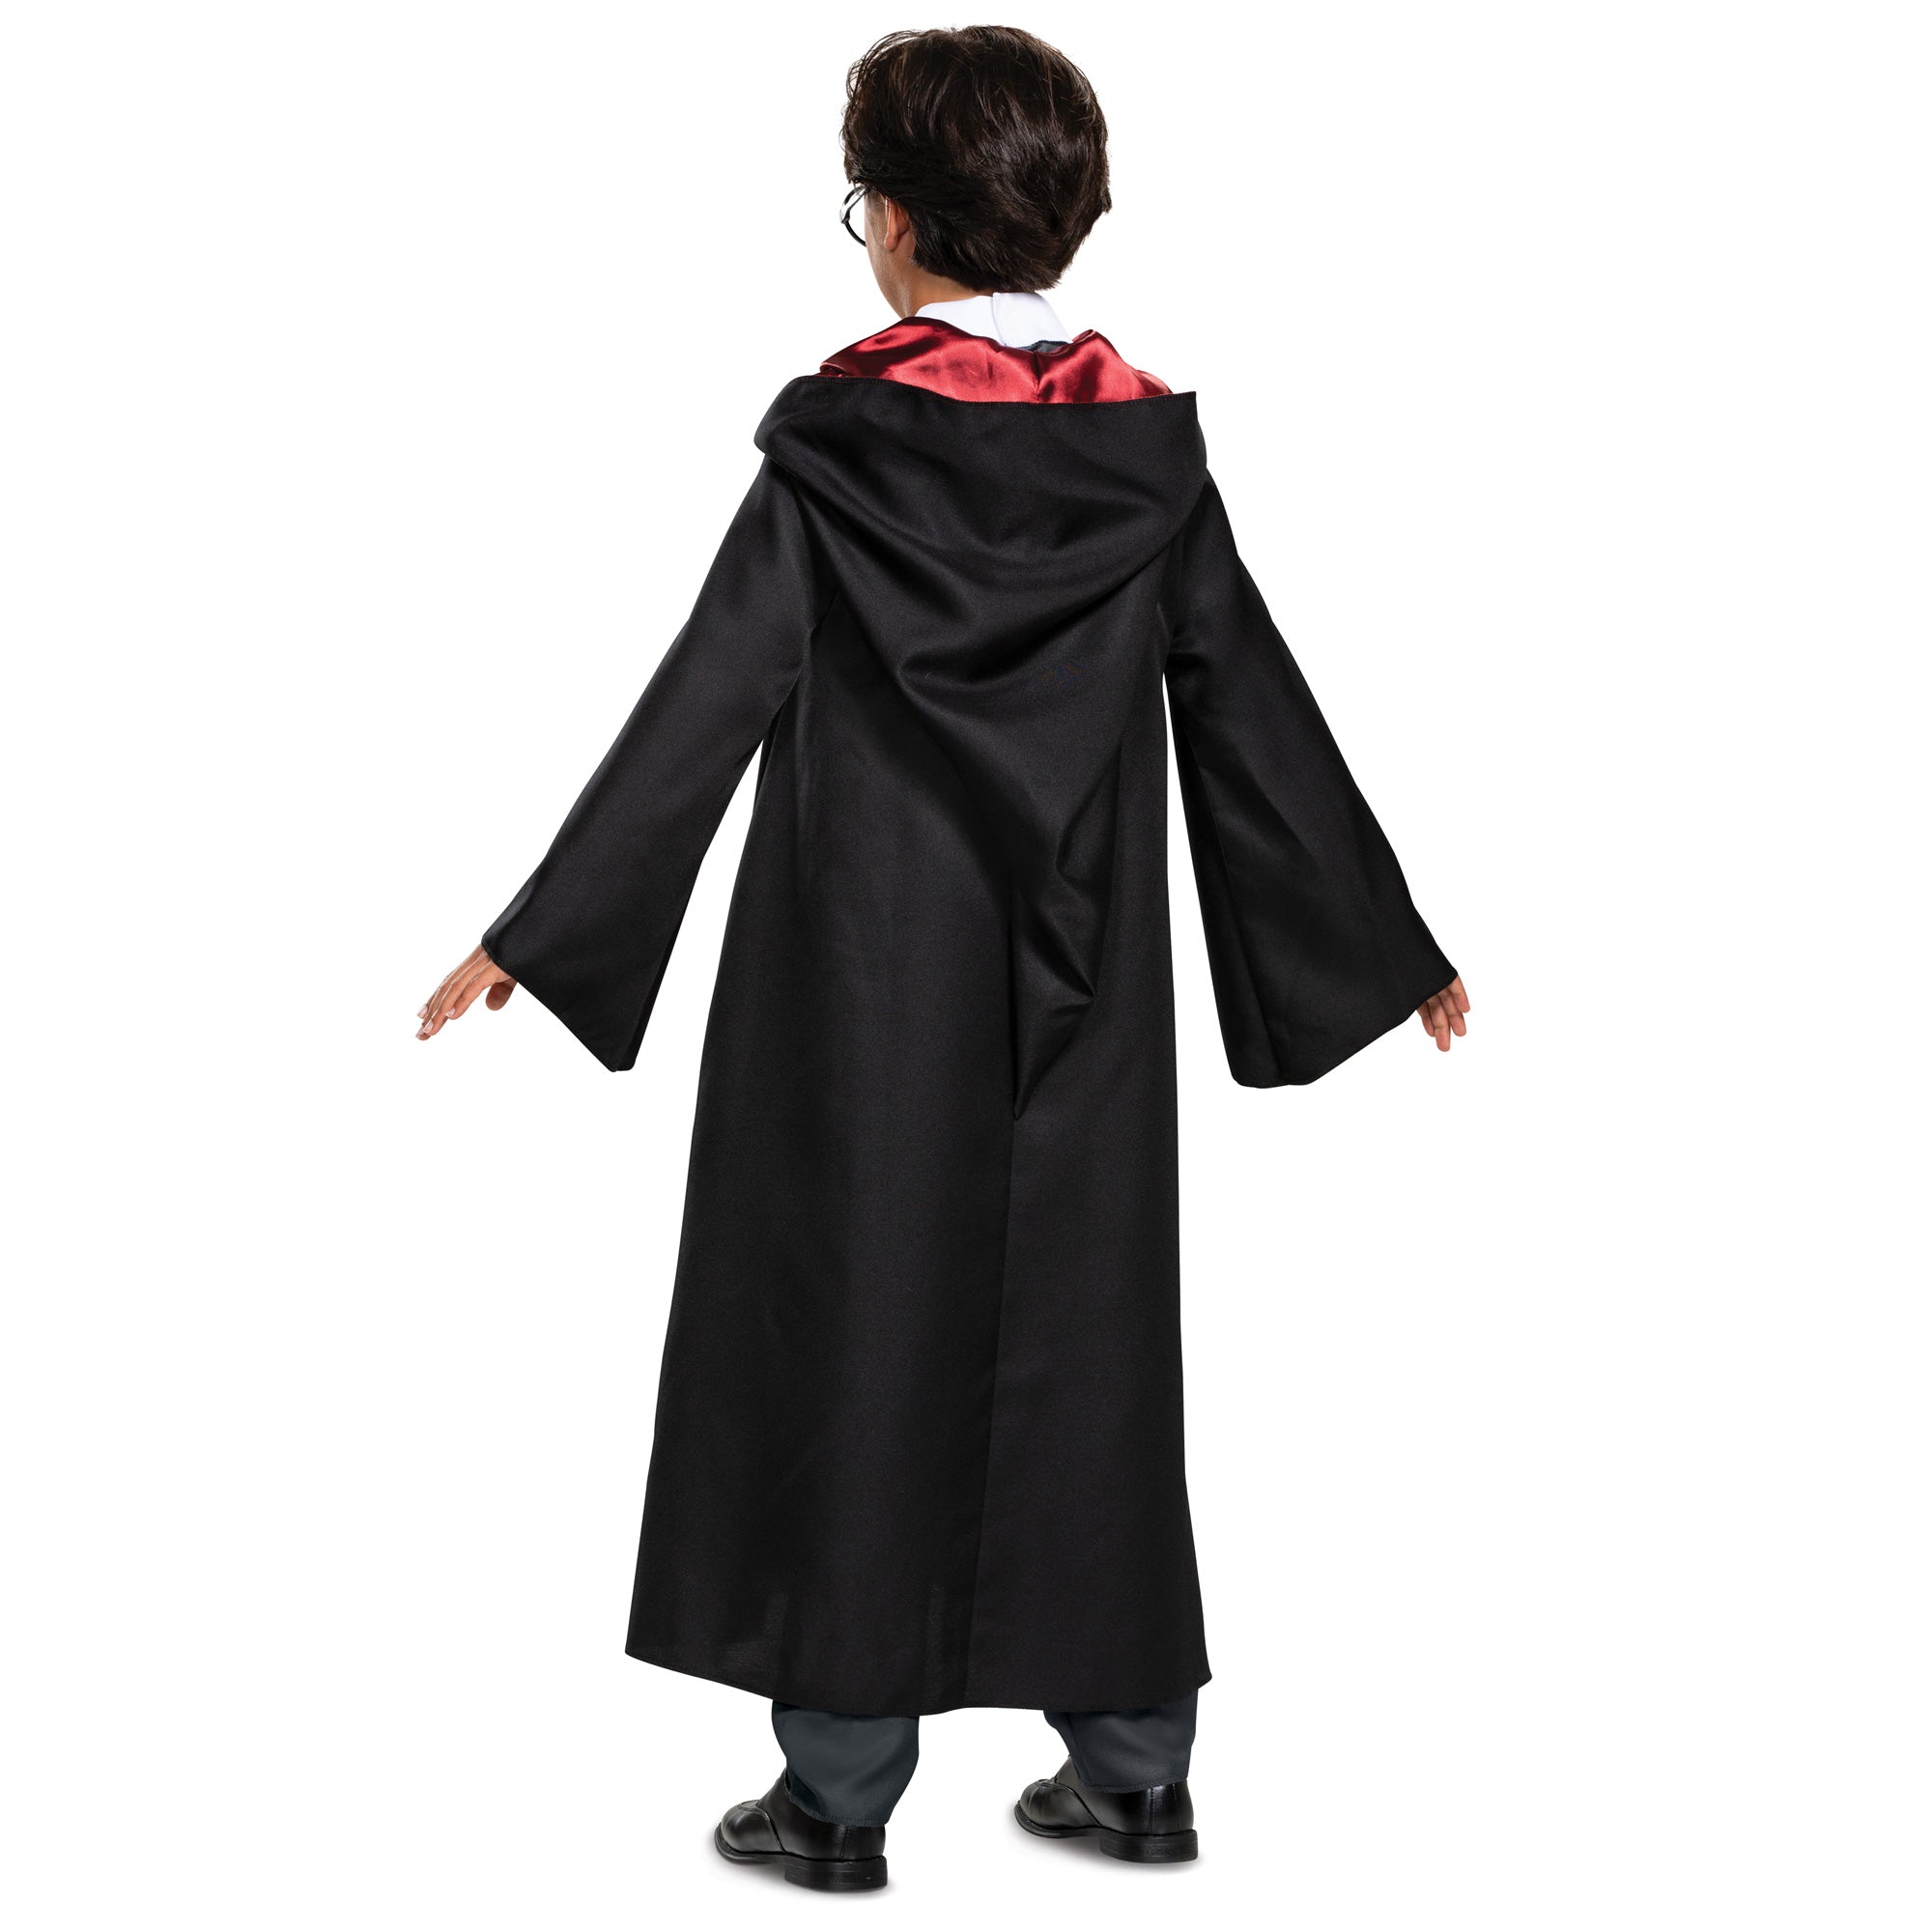 Robe deluxe de Gryffondor pour enfants, Harry Potter